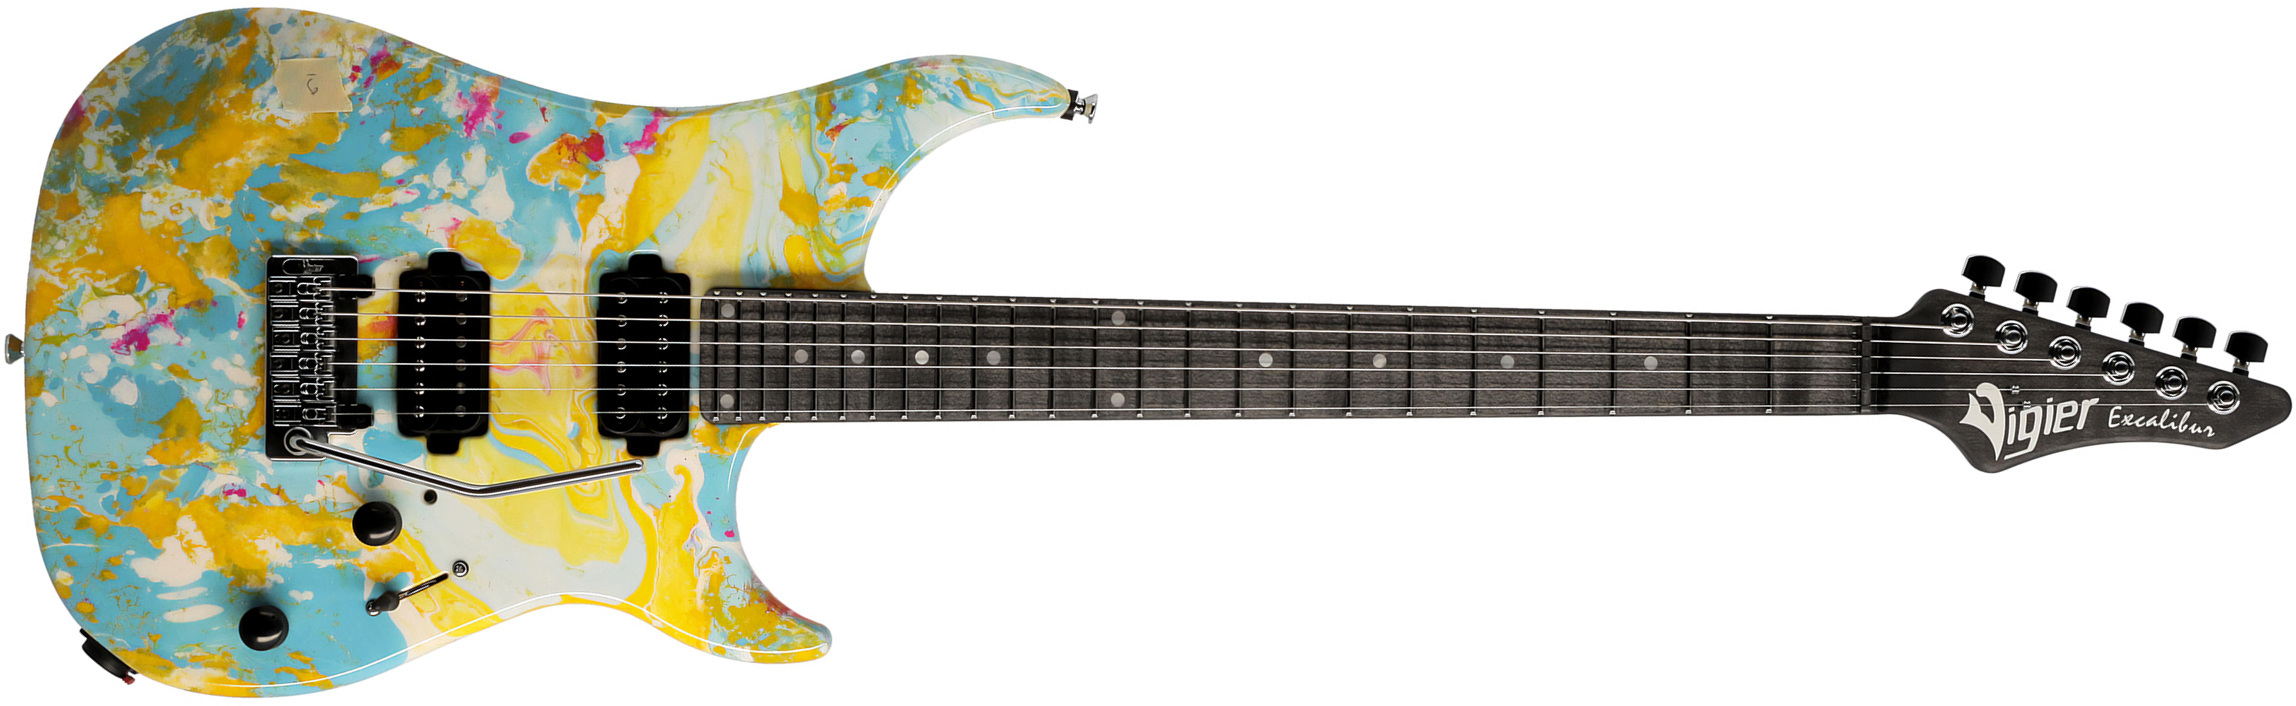 Vigier Excalibur Thirteen 2h Trem Mn - Rock Art Yellow Blue White - Guitarra eléctrica con forma de str. - Main picture